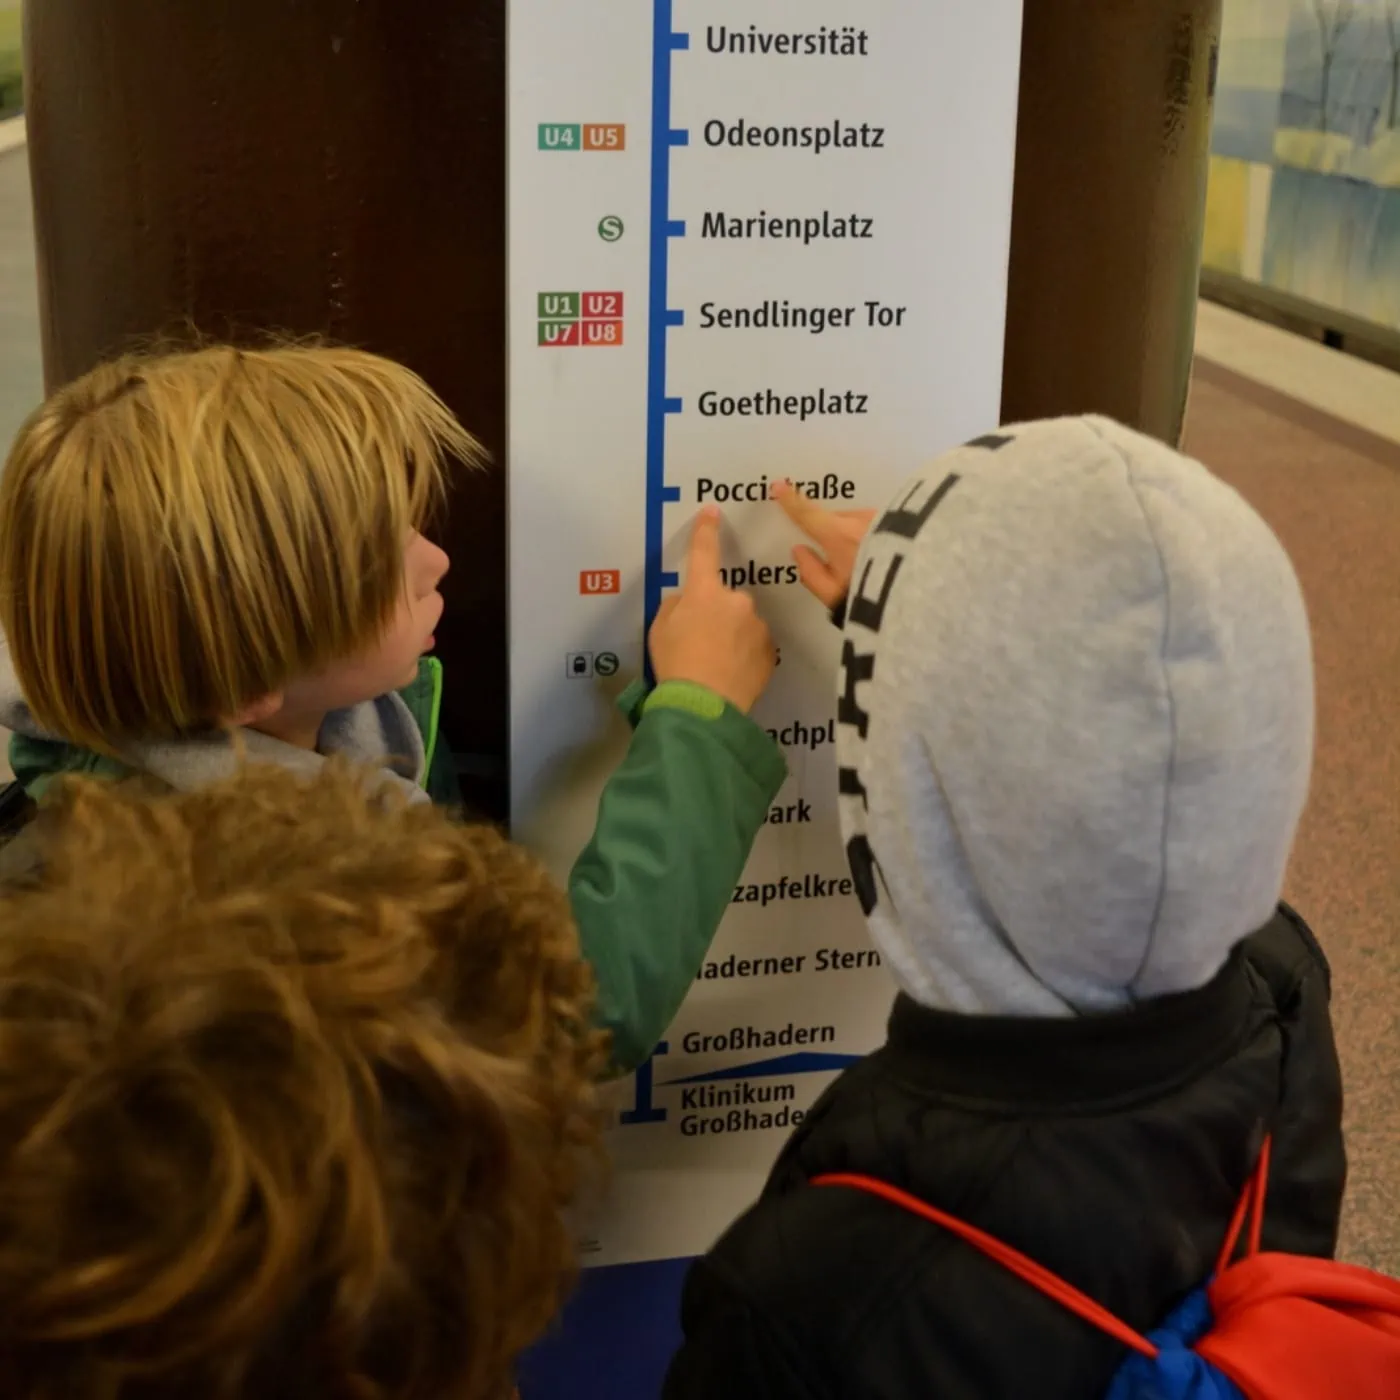 Münchner Kindertag 2021: freie Fahrt in den öffentlichen Verkehrsmitteln in München // HIMBER